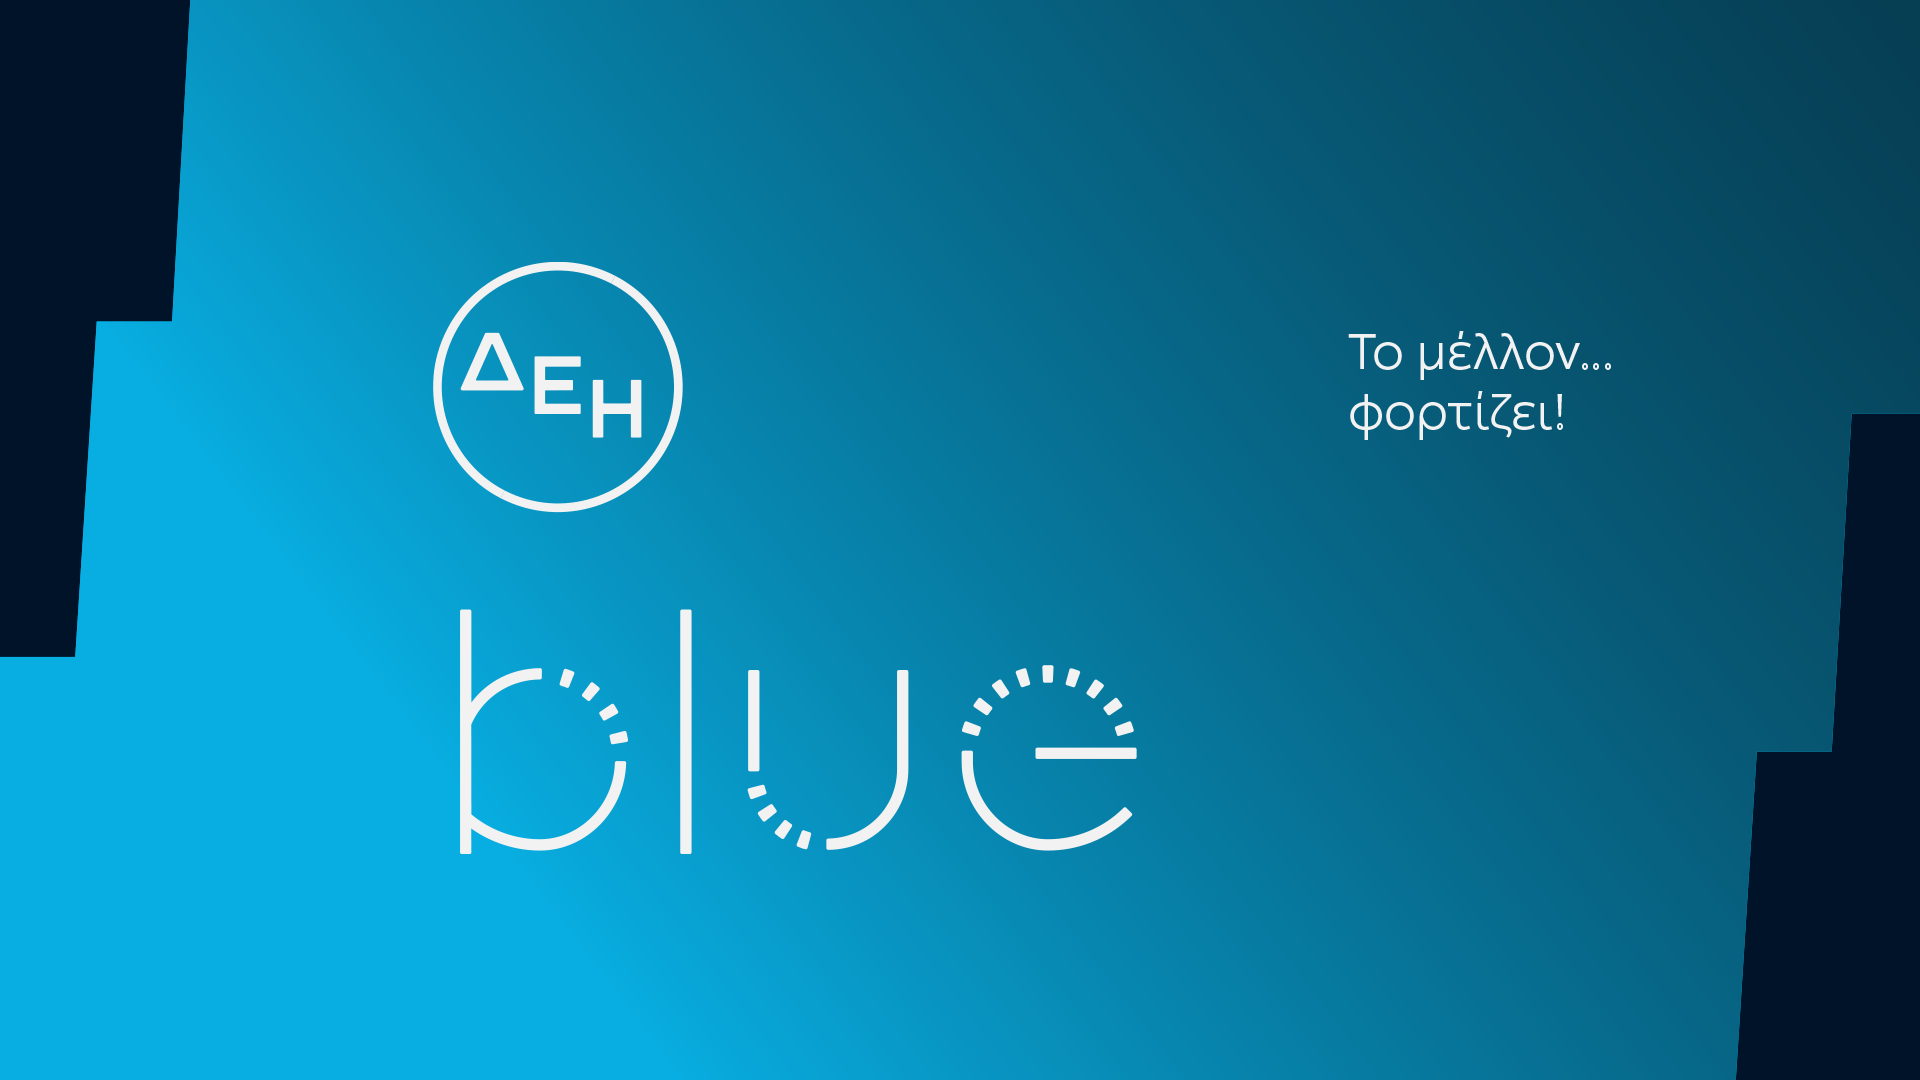 More information about "ΔΕΗ blue: Η επίσημη έναρξη της ηλεκτροκίνησης από τη ΔΕΗ"